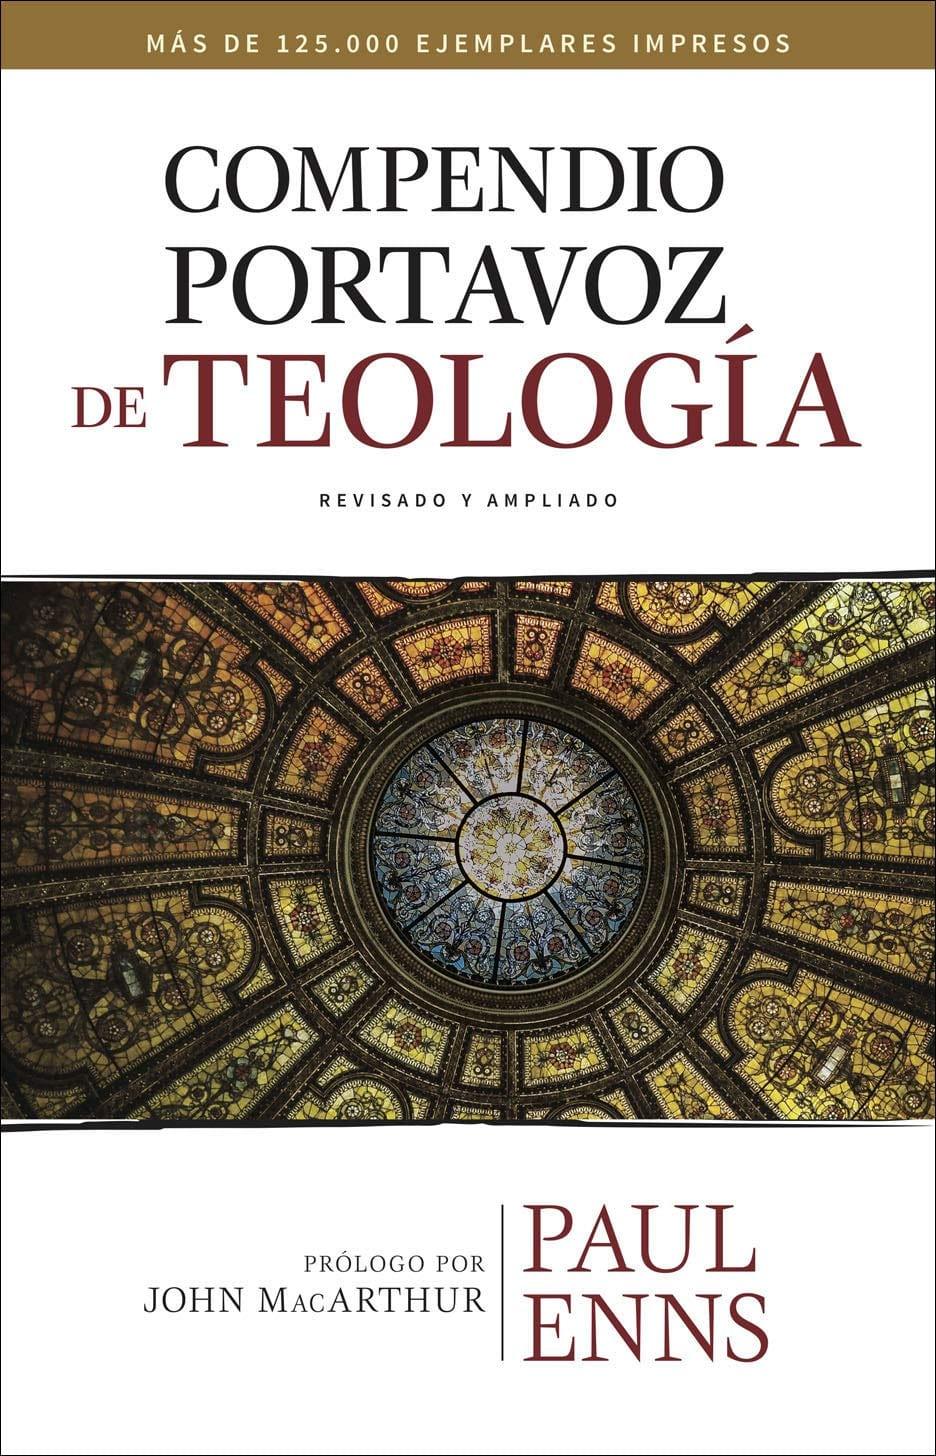 Compendio Portavoz De Teología - Paul Enns - Pura Vida Books